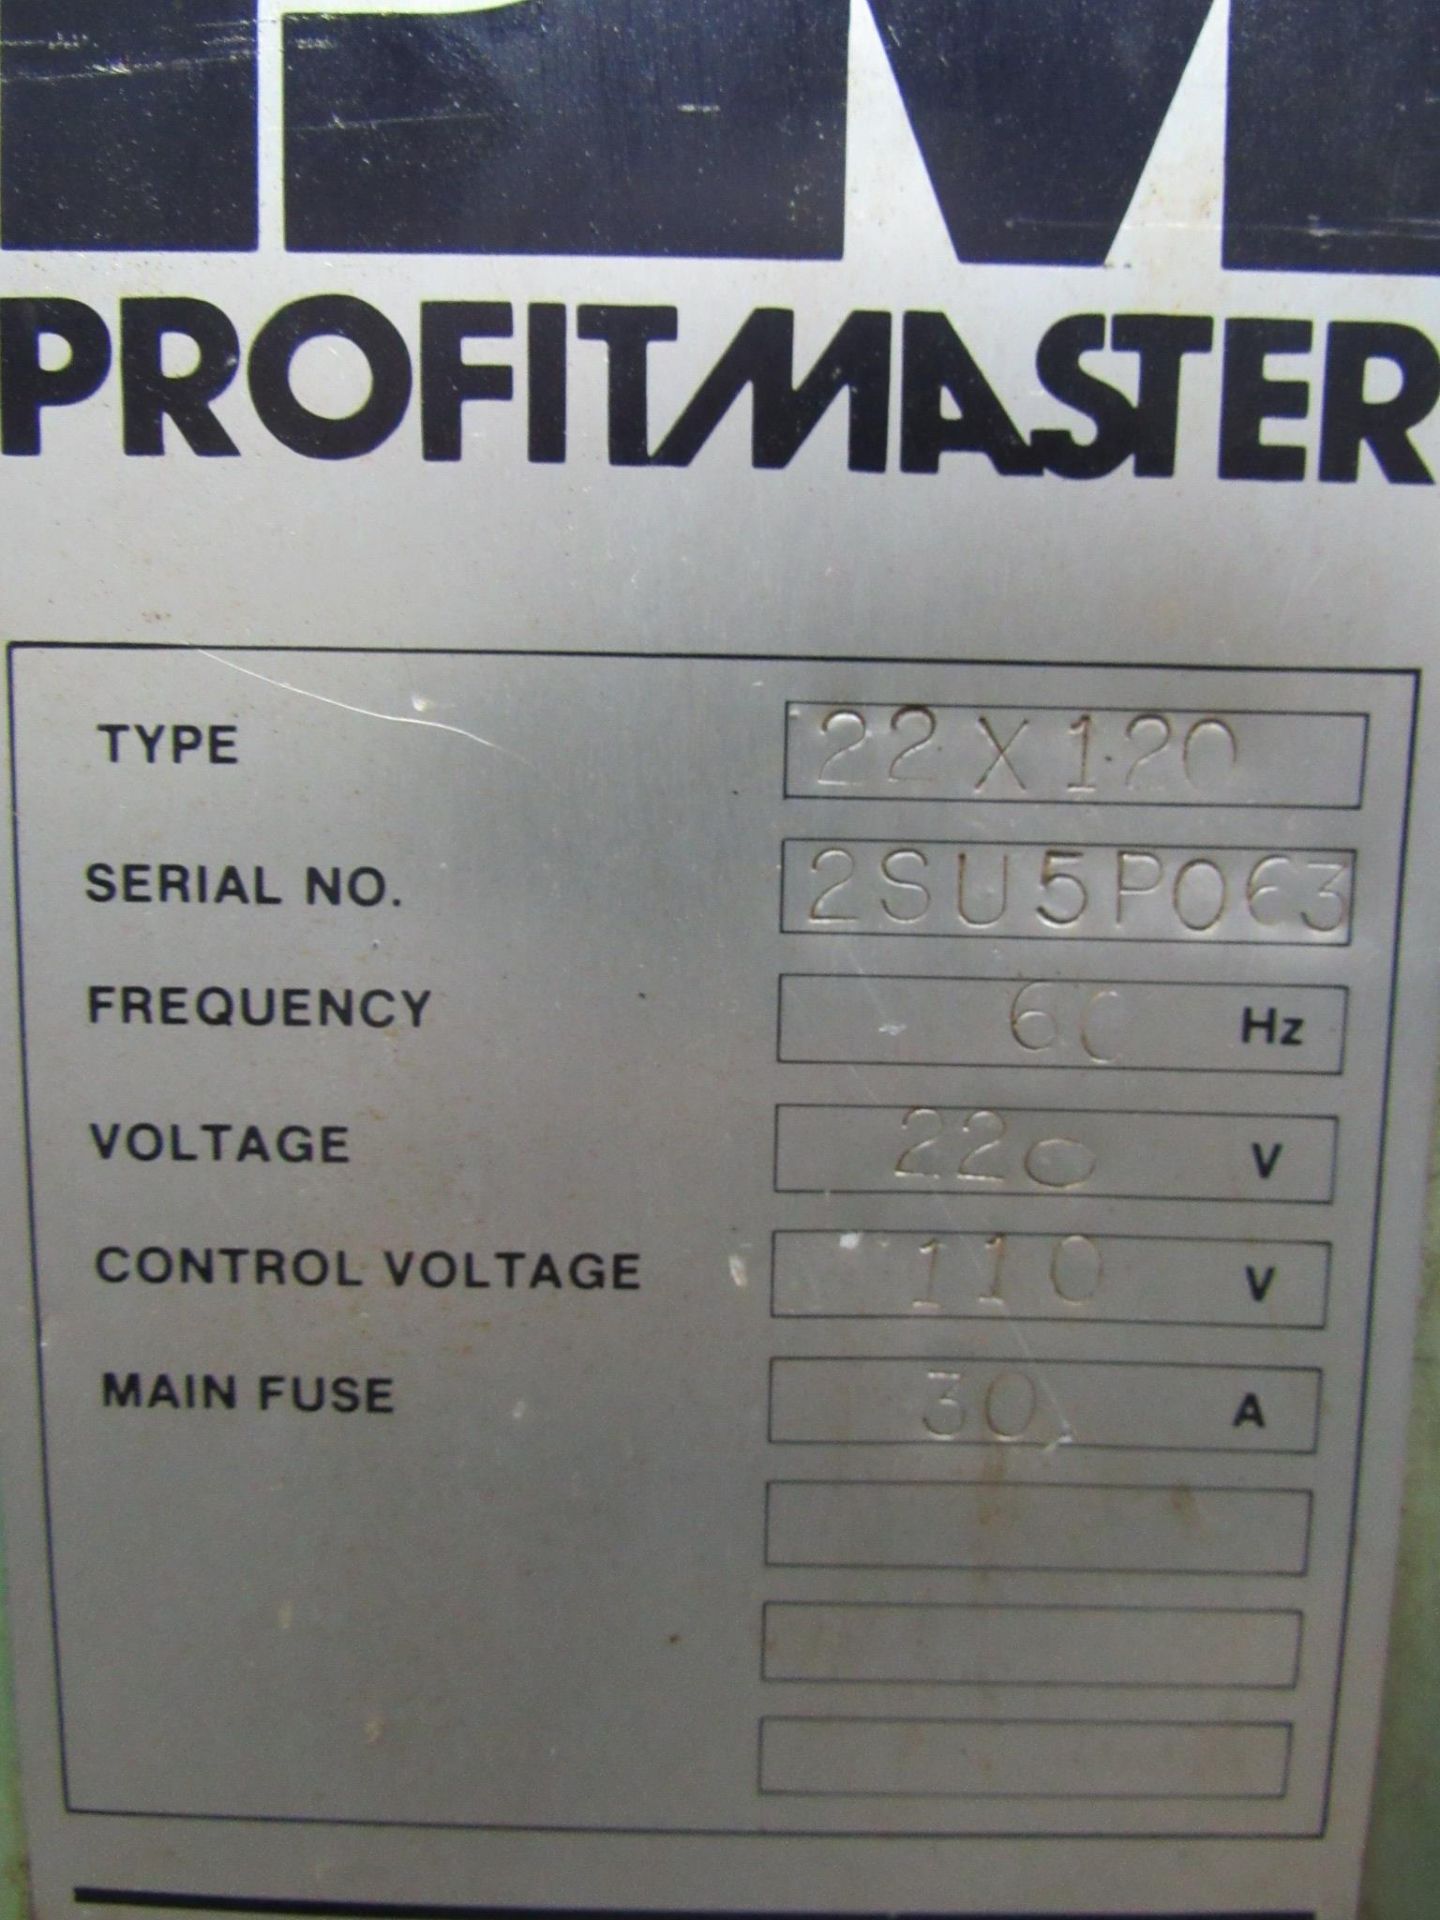 22" x 120" Profitmaster Model 15 Gap Bed Engine Lathe - Image 4 of 9